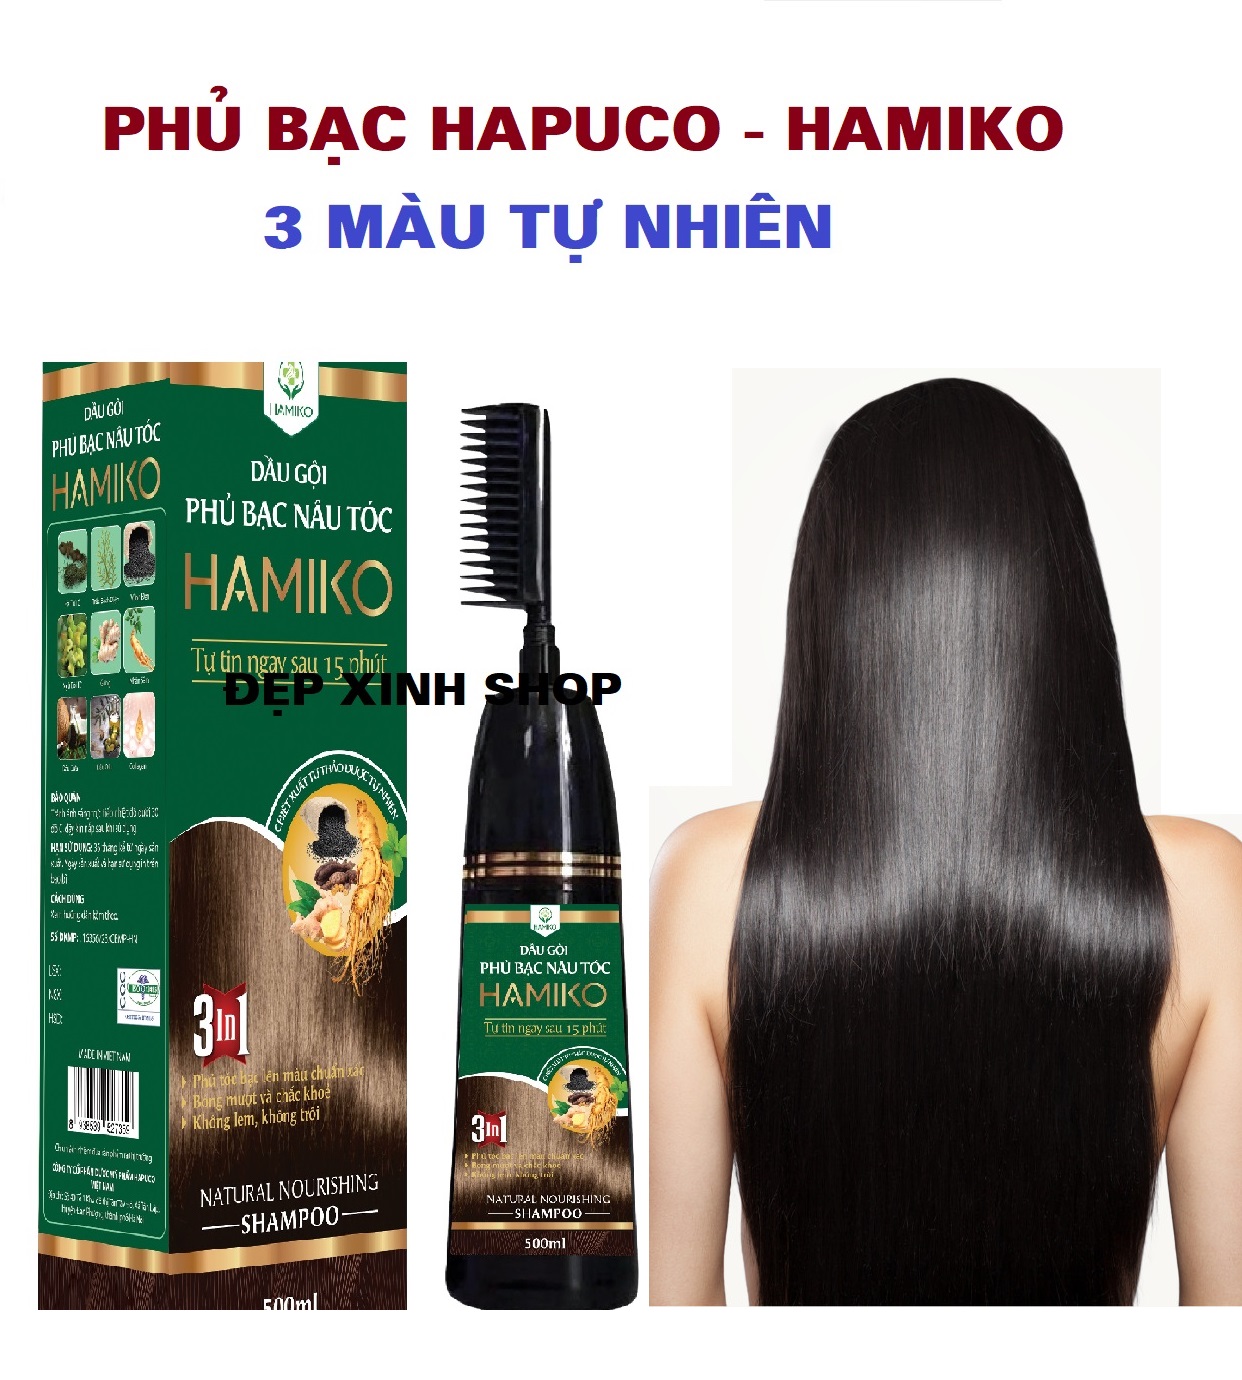 Dầu gội phủ bạc Hamiko - Hapuco 3 màu, nâu đen, nâu sáng, đen